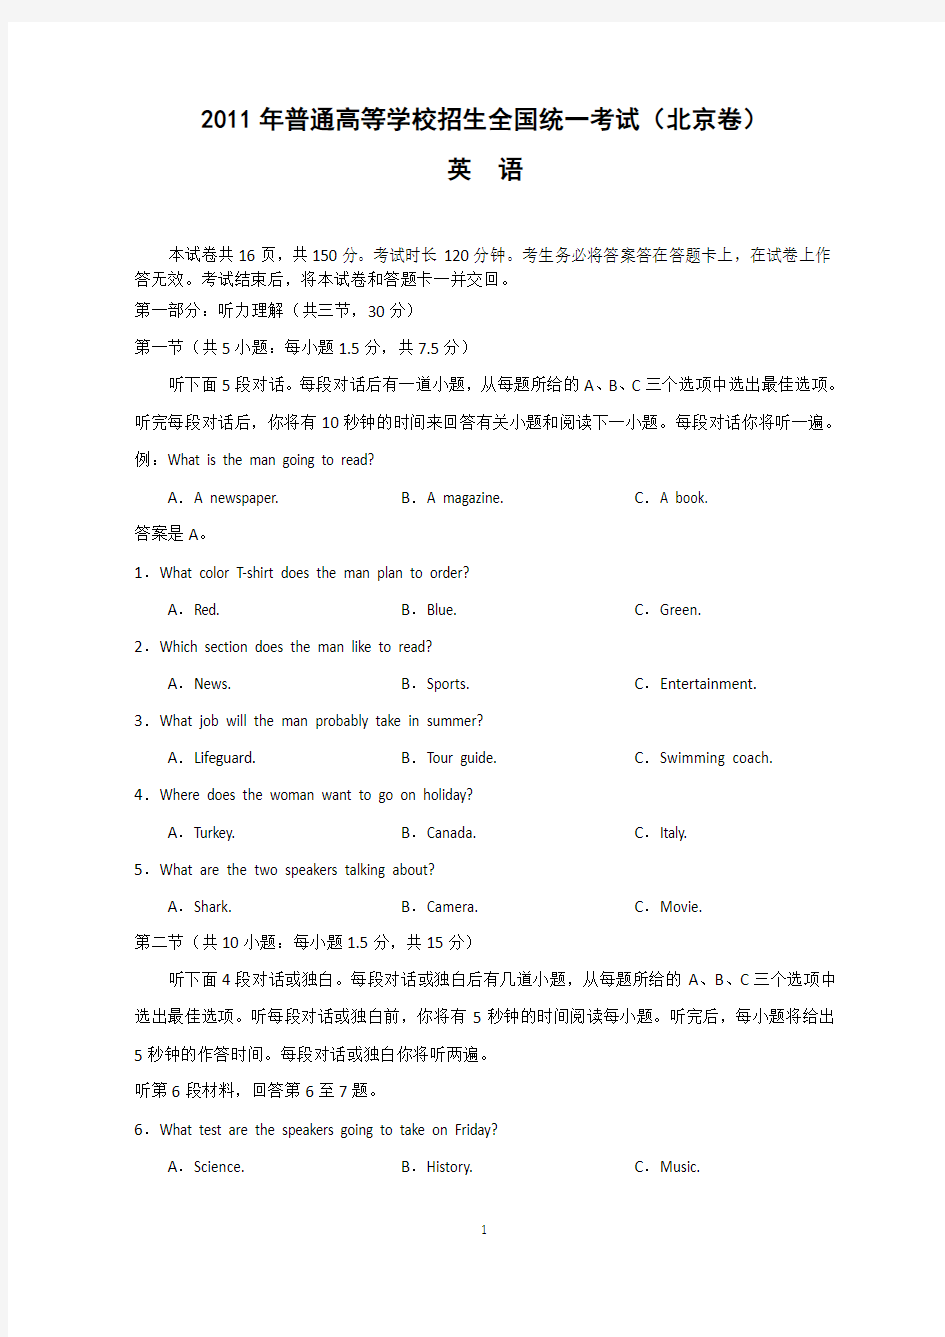 2011年全国高考英语试题及答案(北京卷)